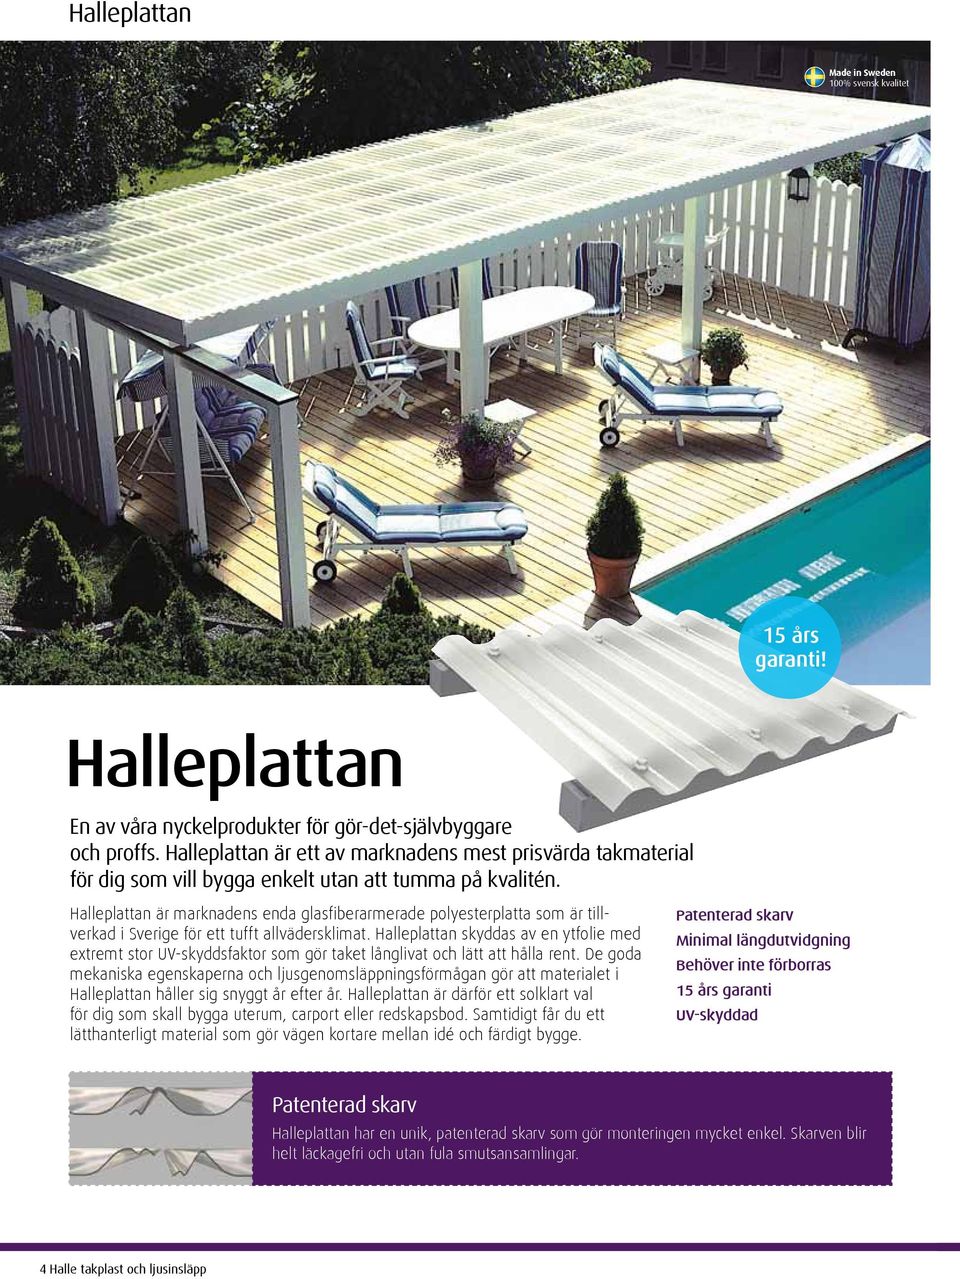 Halleplattan är marknadens enda glasfiberarmerade polyesterplatta som är tillverkad i Sverige för ett tufft allvädersklimat.